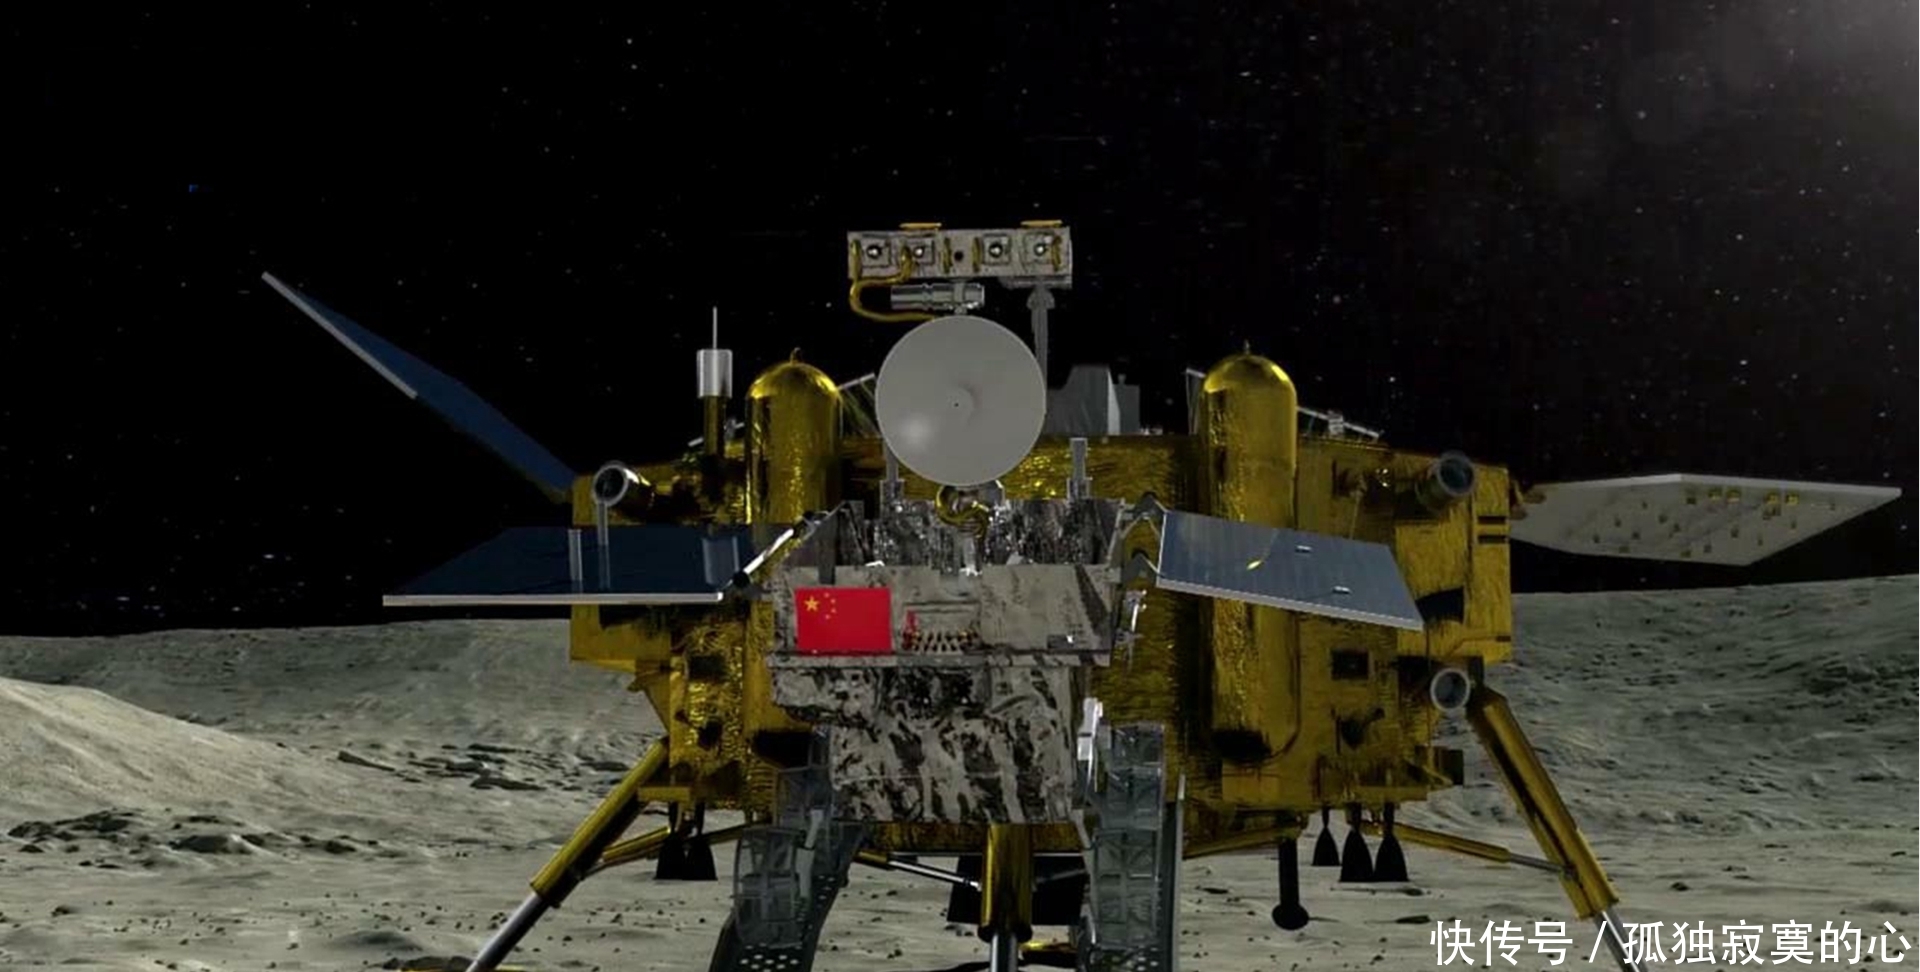 领先美国全球第一!嫦娥四号征服月球背面,重